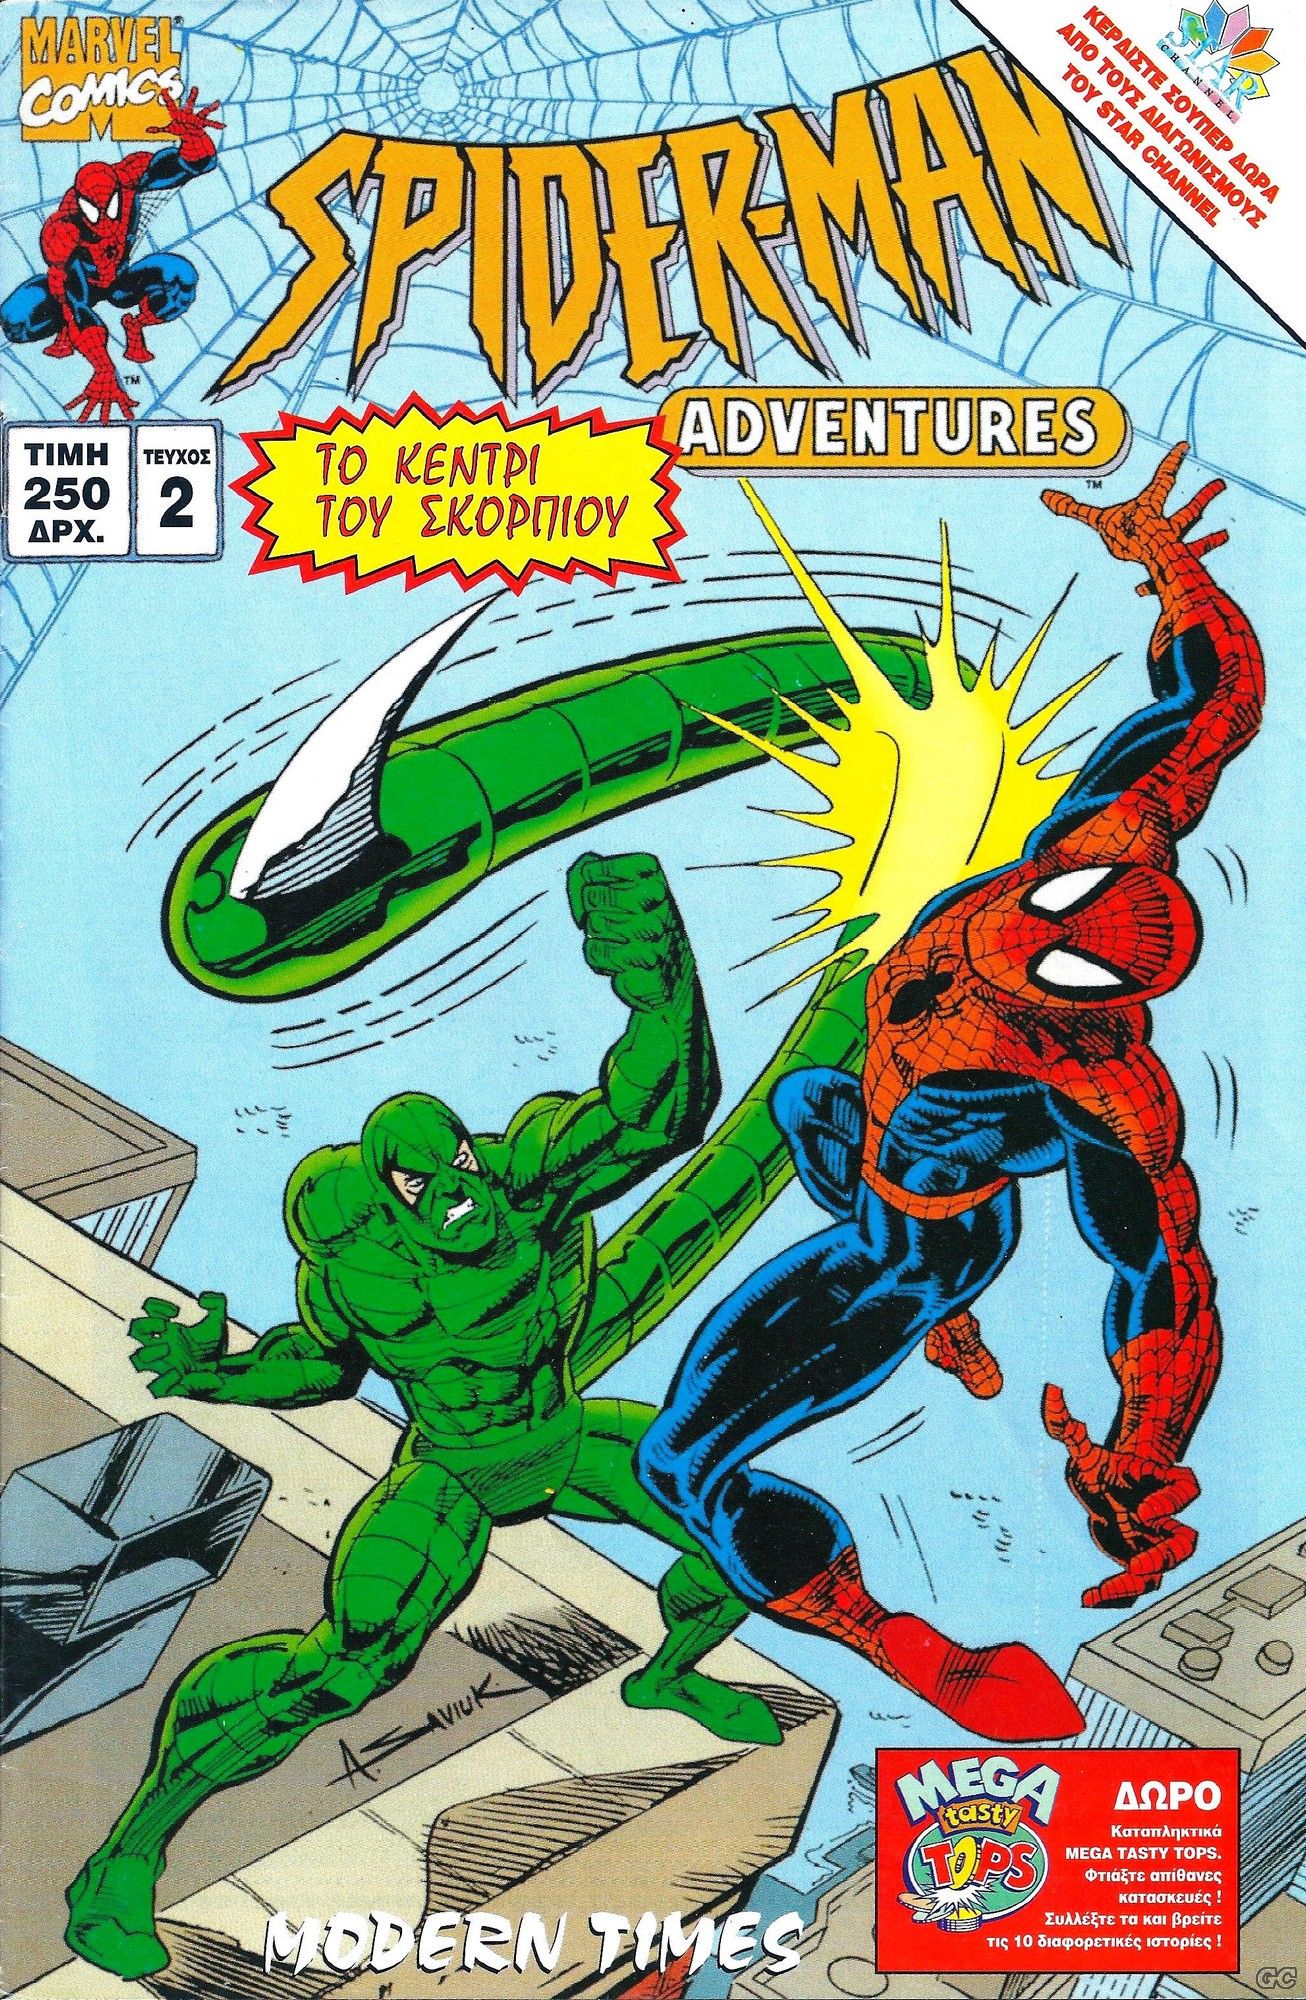 SpidermanAdventures_0002.jpg